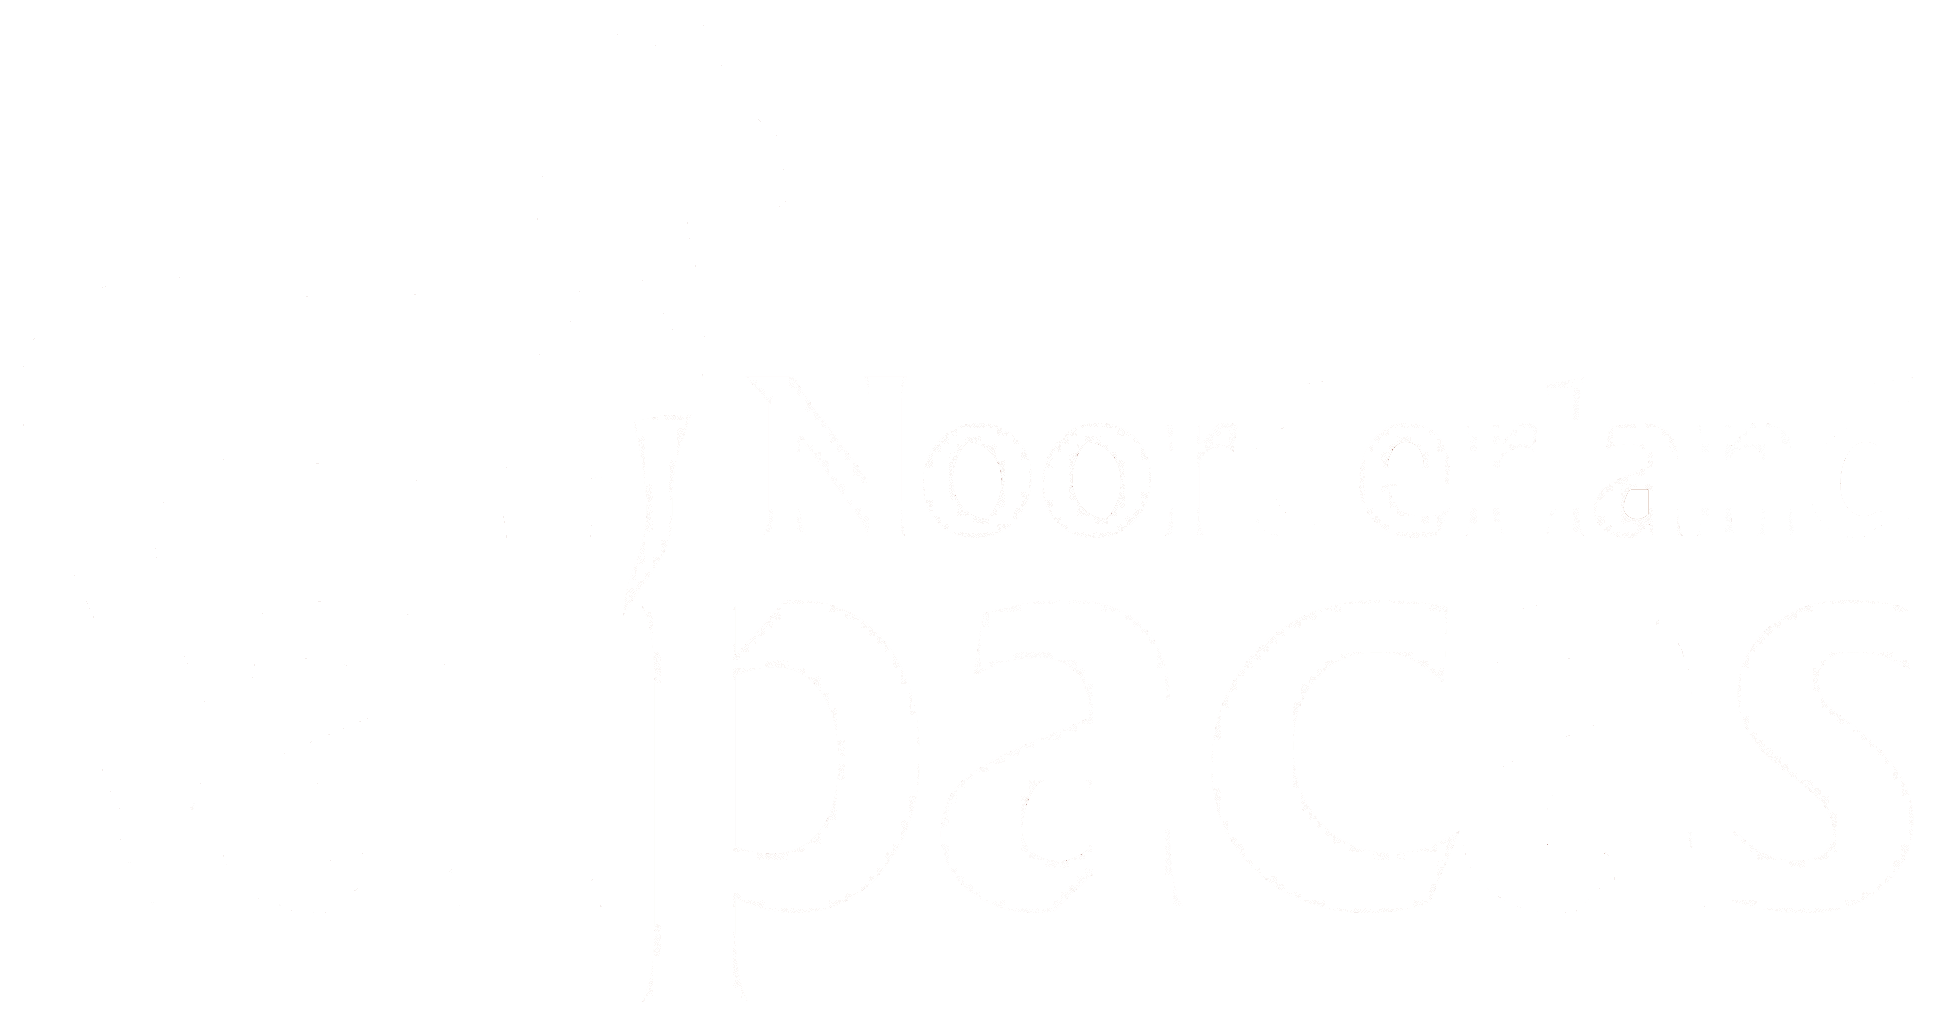 Noorderland Alpacas